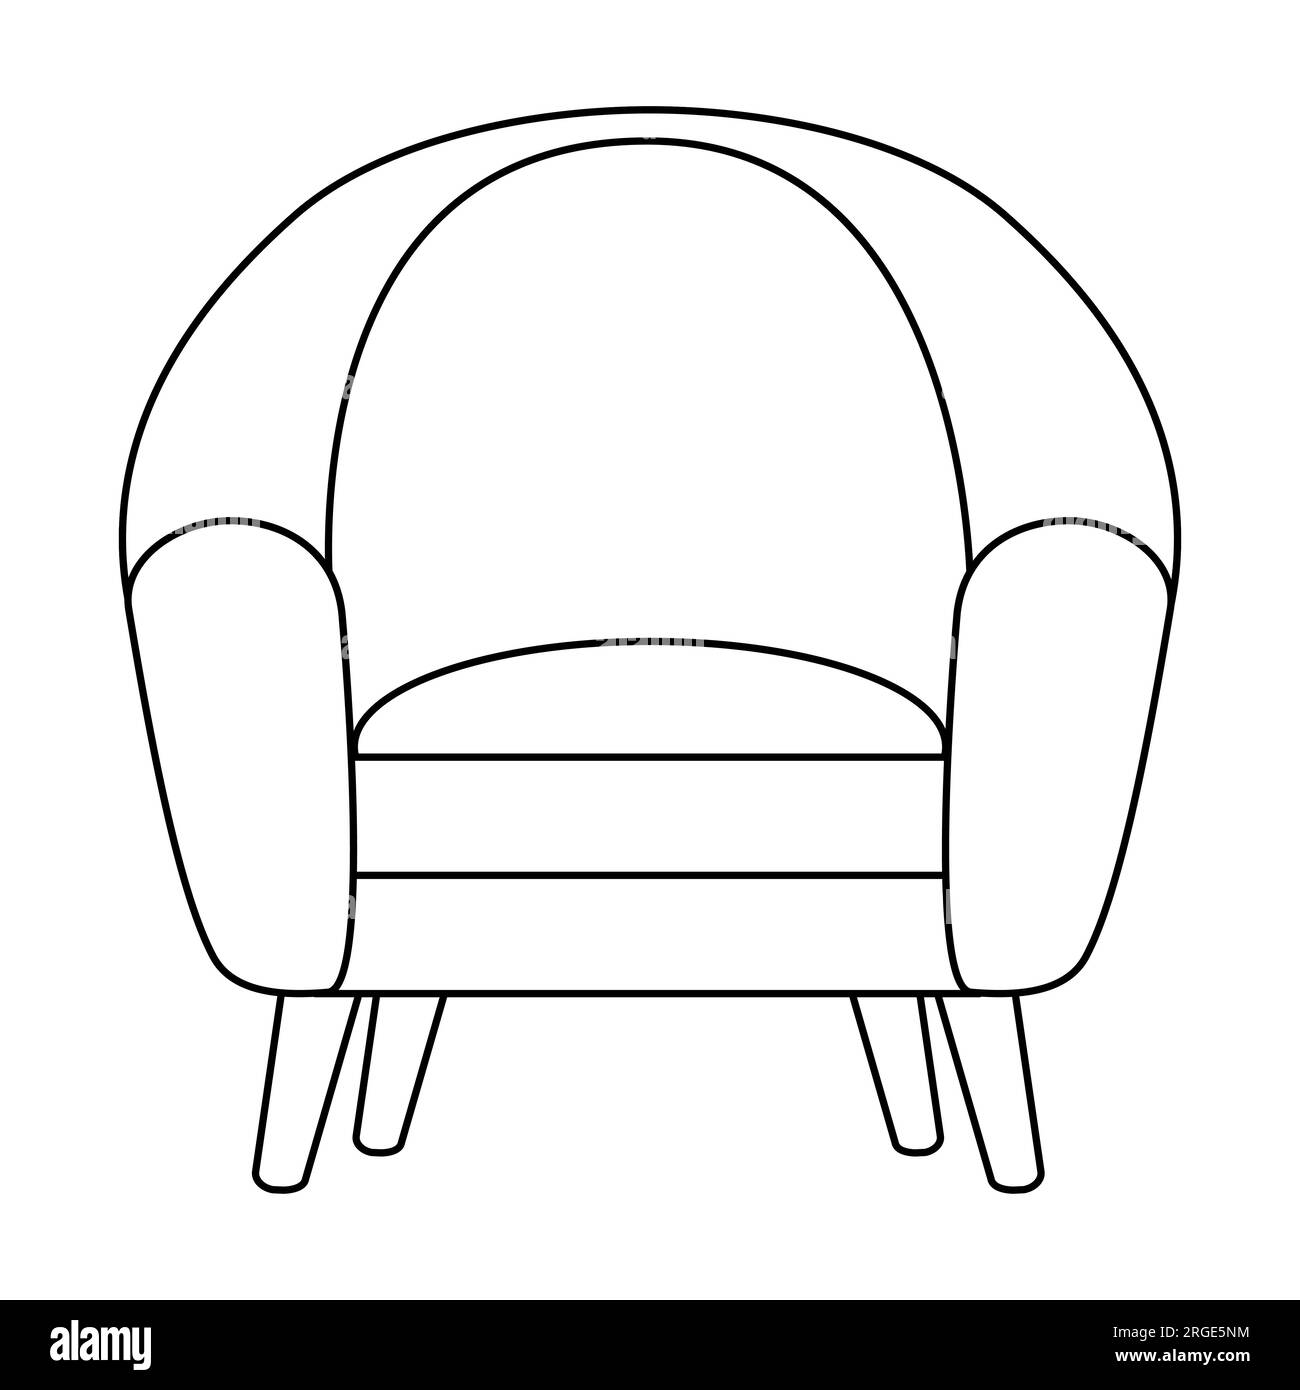 Bequemer Stuhl, Innendesign-Element für Wohnzimmer oder Schrank, Frontansicht, Doodle-Style Flachvektorzeichnung für Kinder Malbuch Stock Vektor